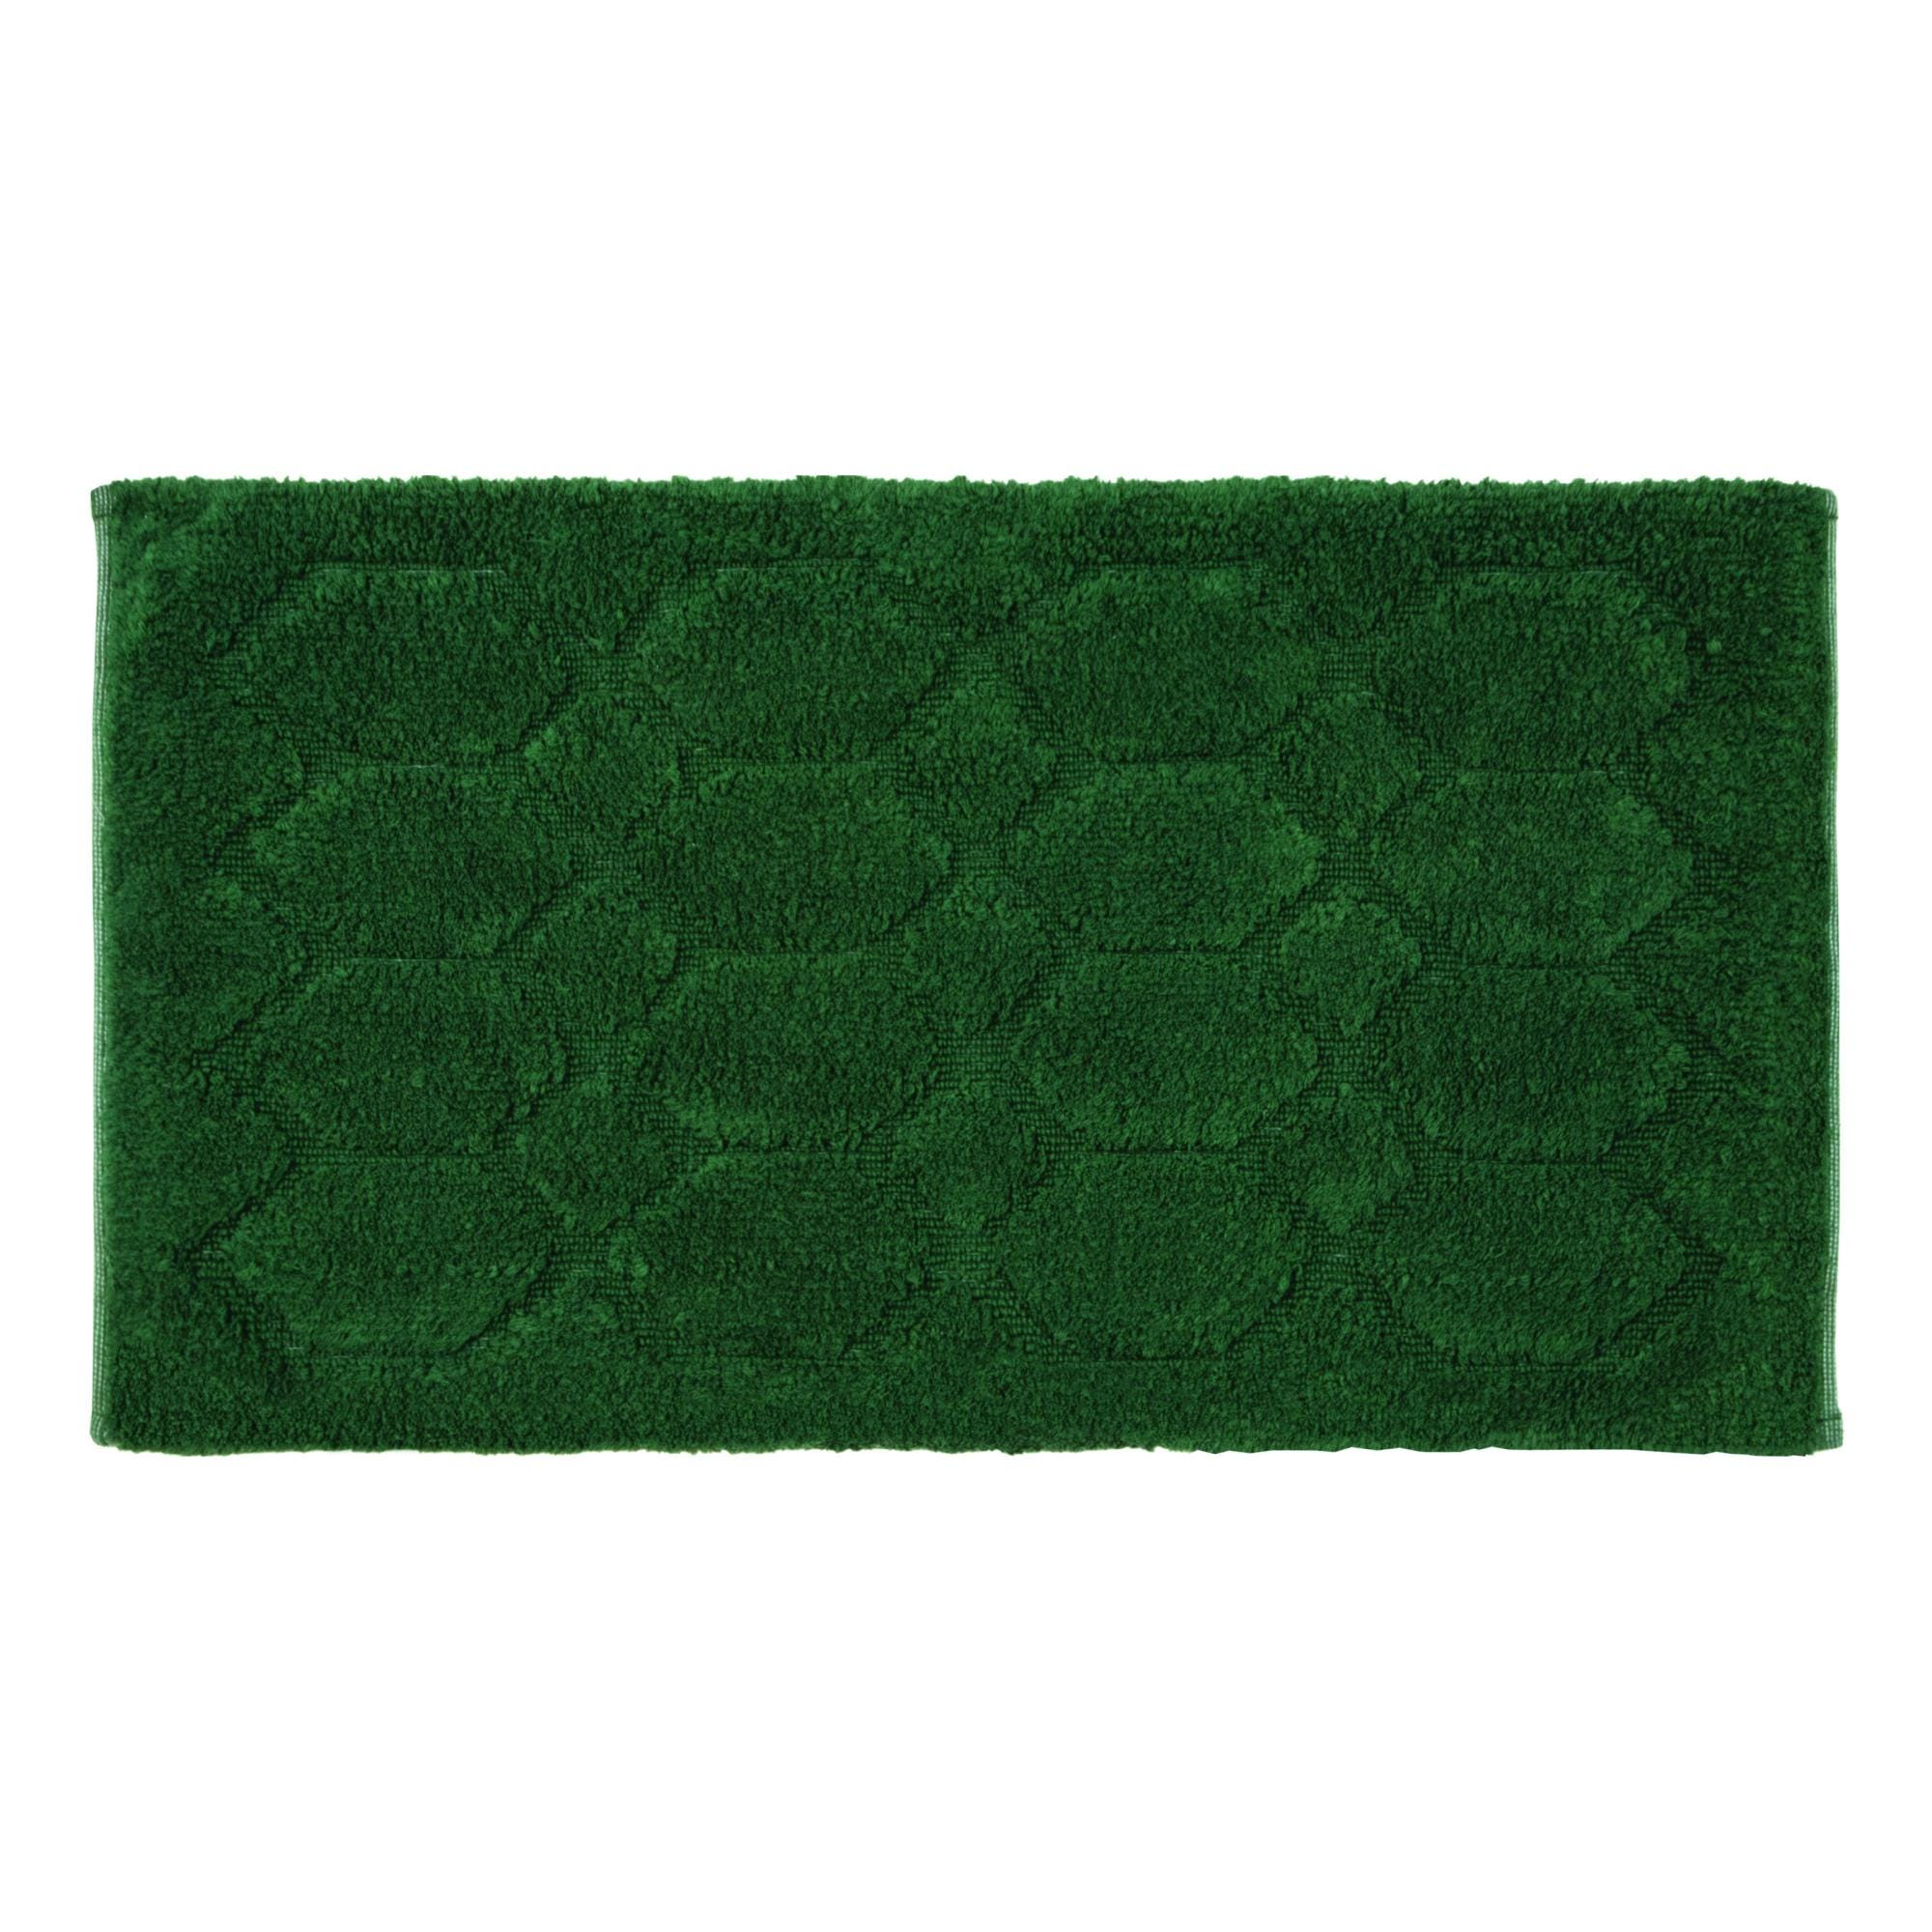 Tappeto bagno a forma di stella, 100% cotone, colore verde